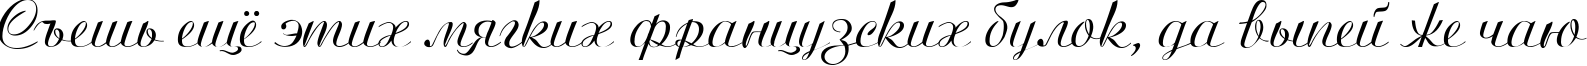 Пример написания шрифтом Ariston Normal текста на русском